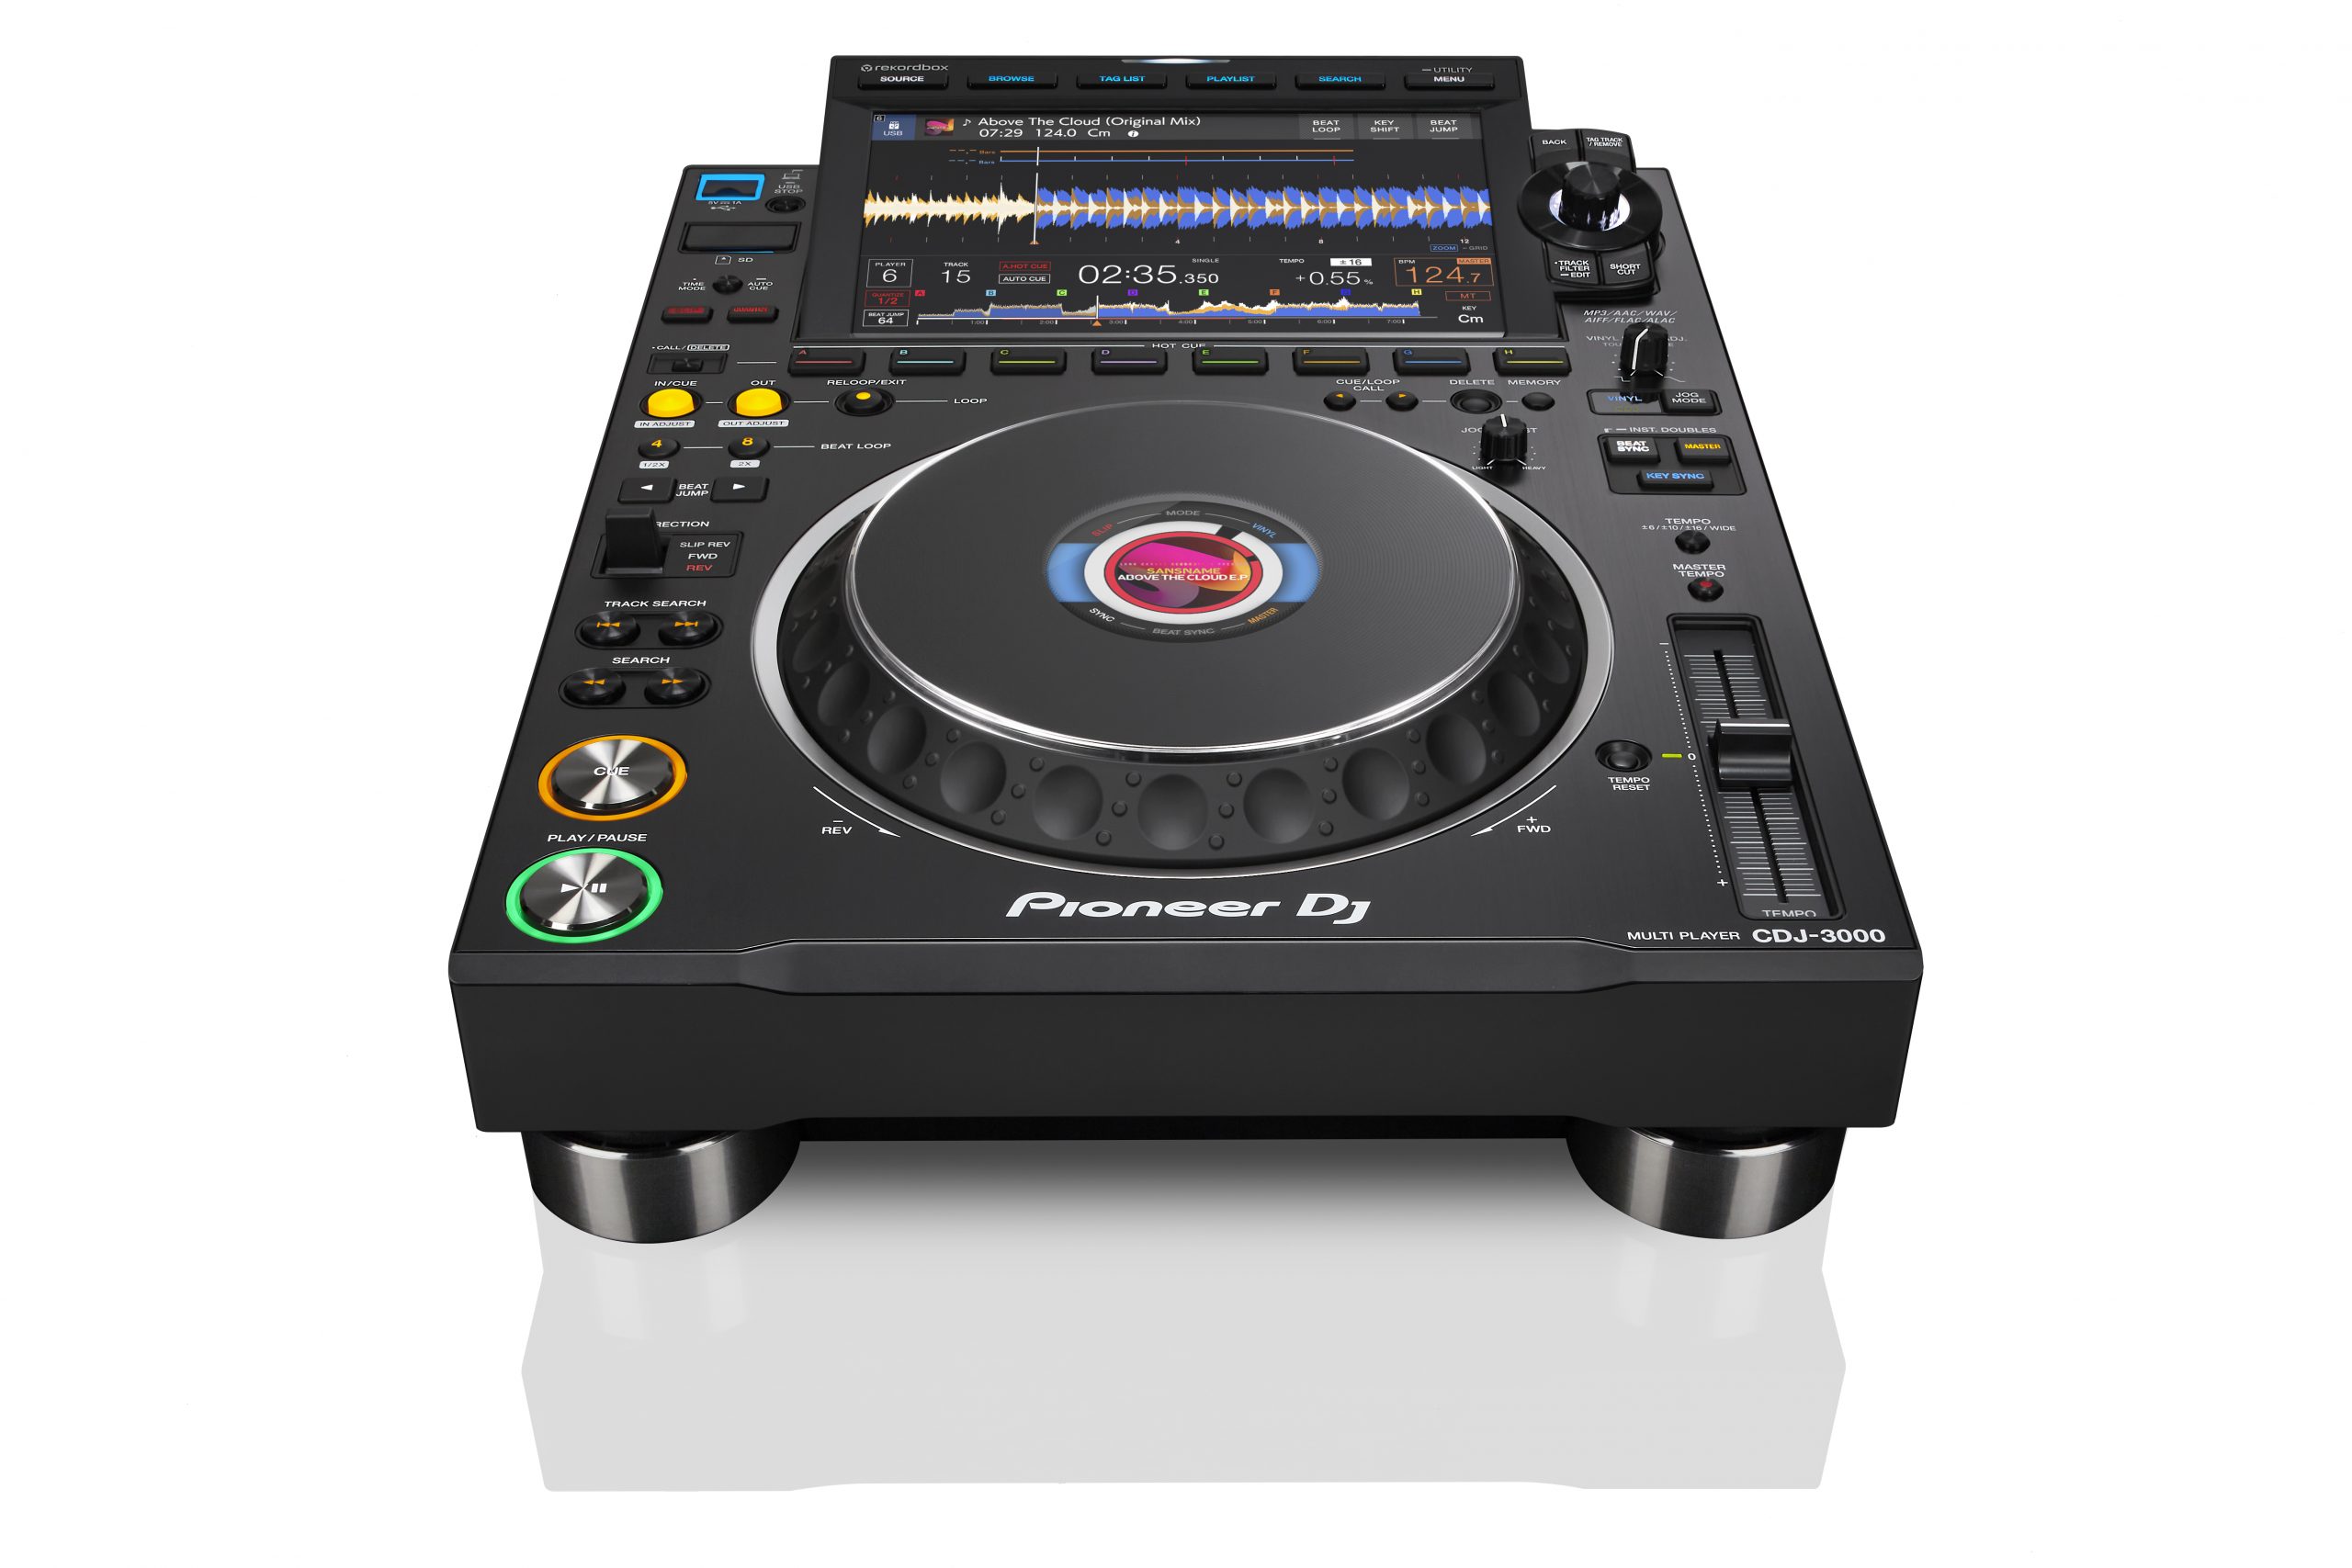 Pioneer CDJ-3000 ahora reproduce archivos de audio completos aunque falle el Pro DJ Link